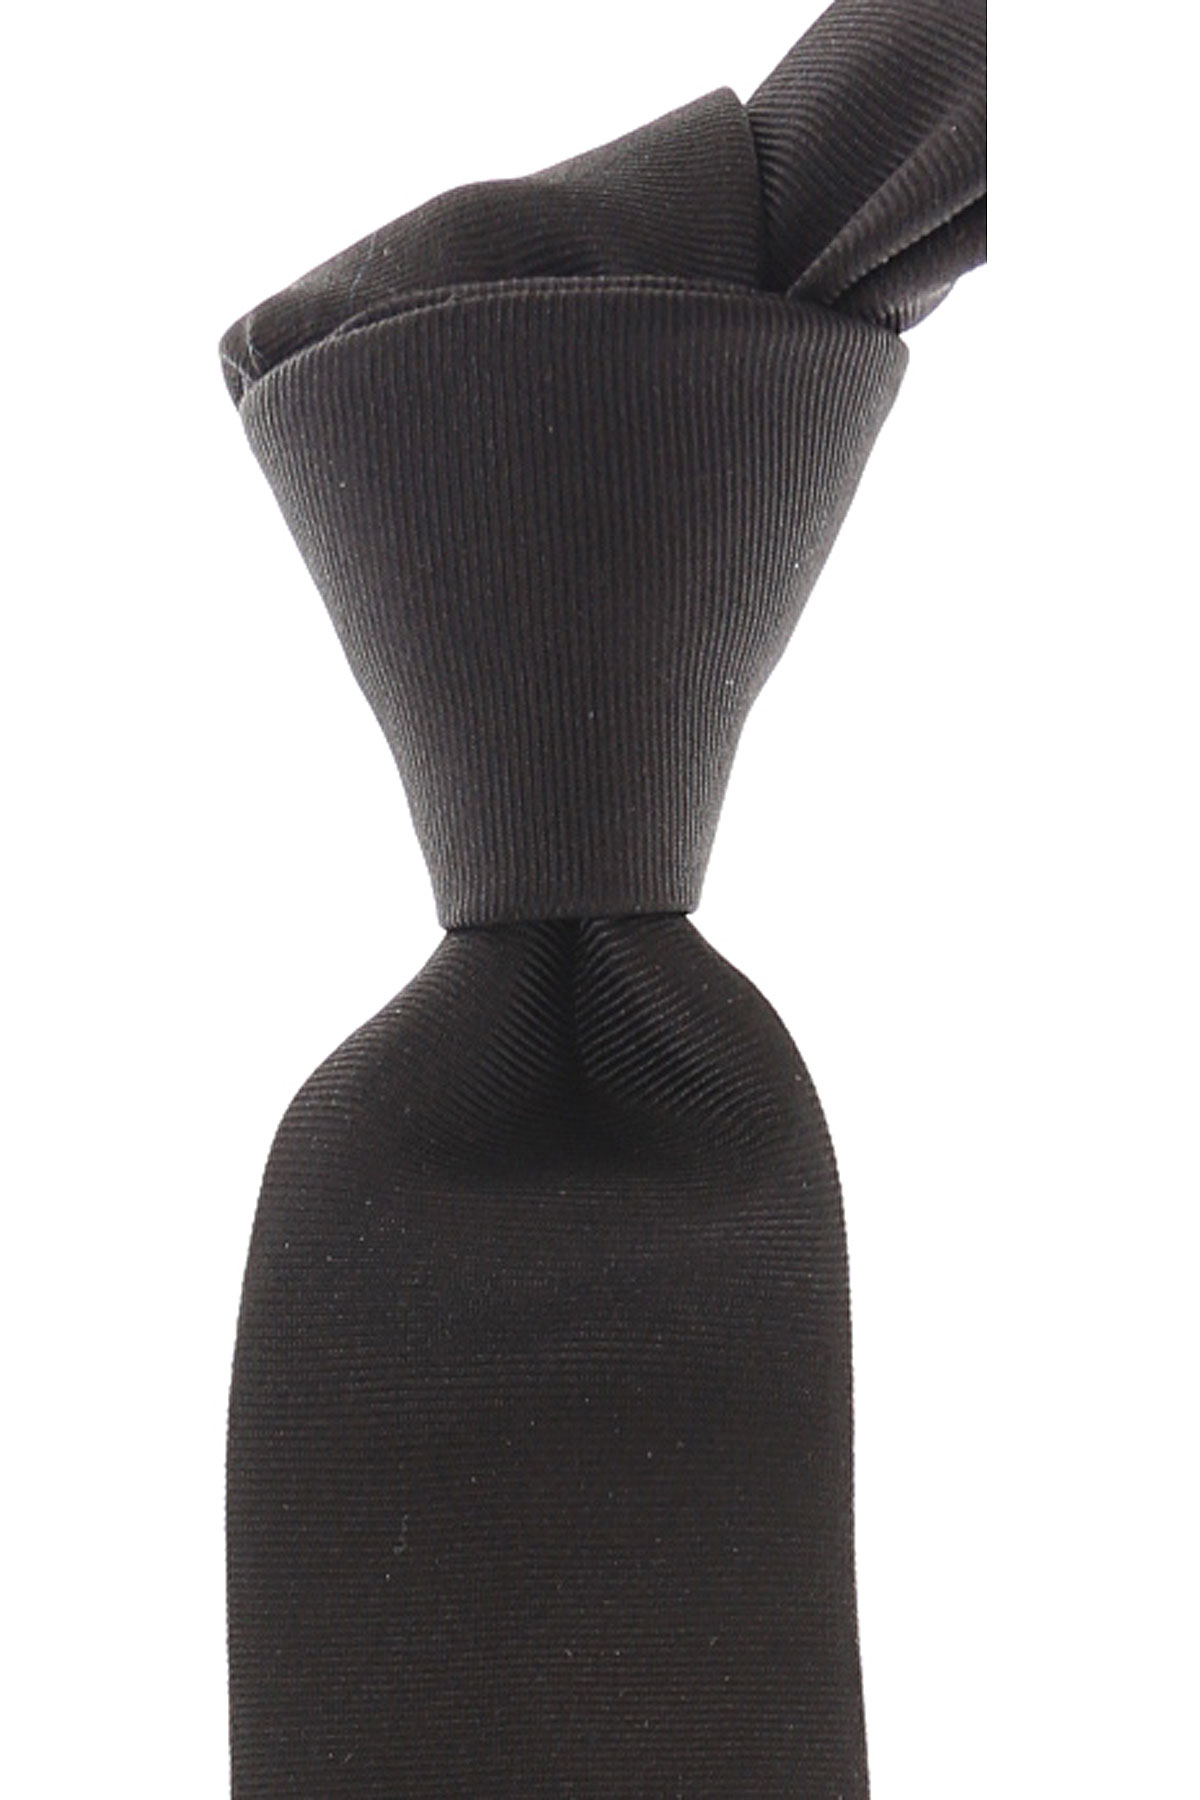 Cravates Givenchy , Noir, Soie, 2017